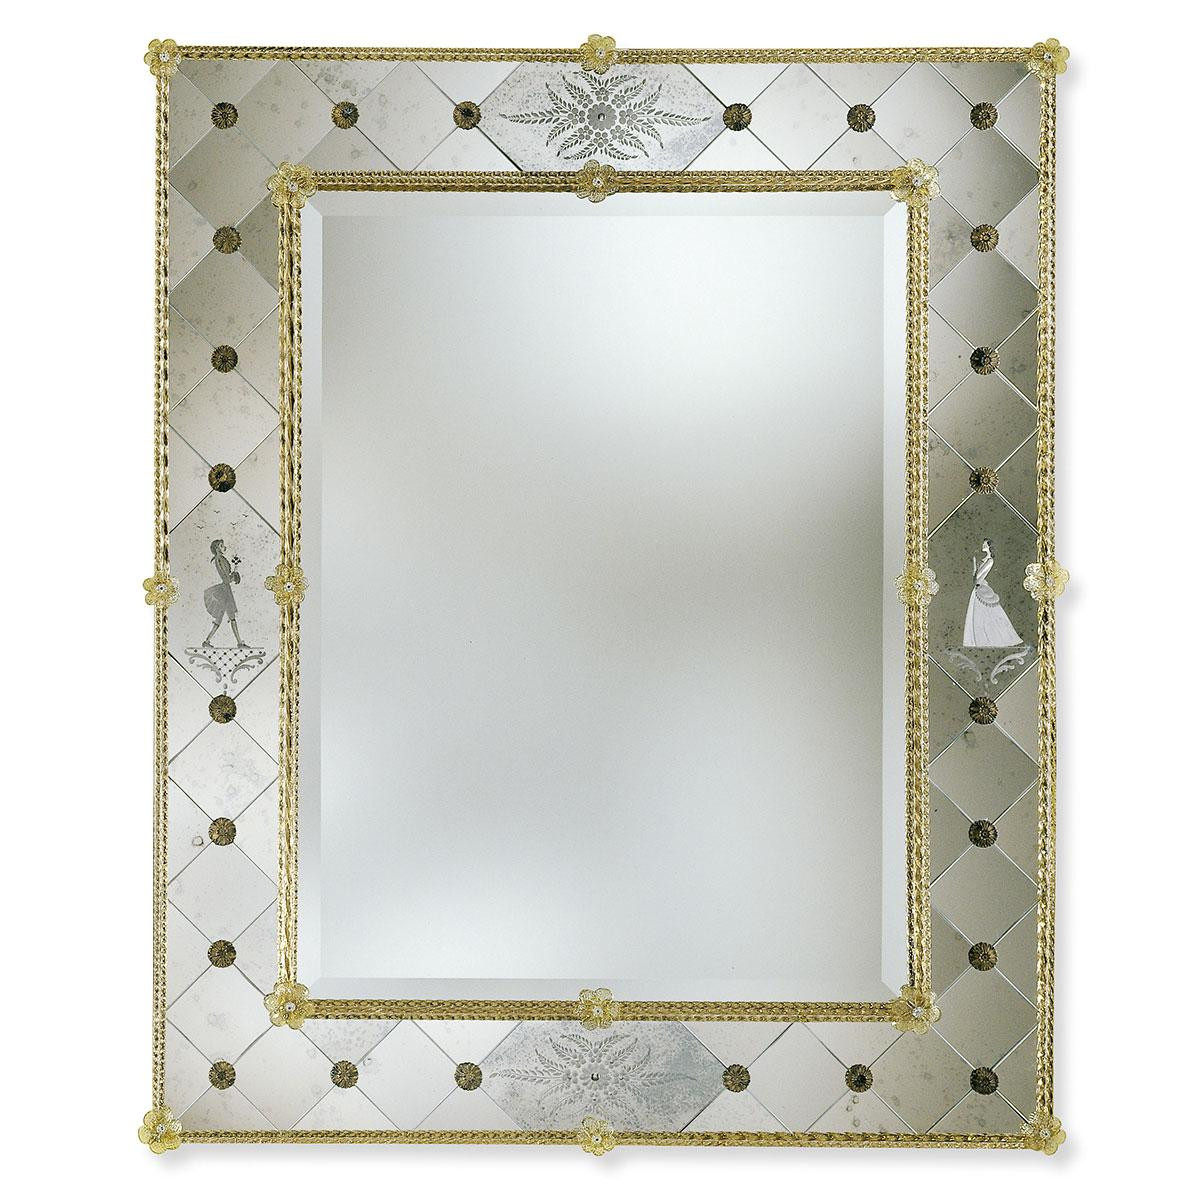 "Isotta" Murano glass venetian mirror